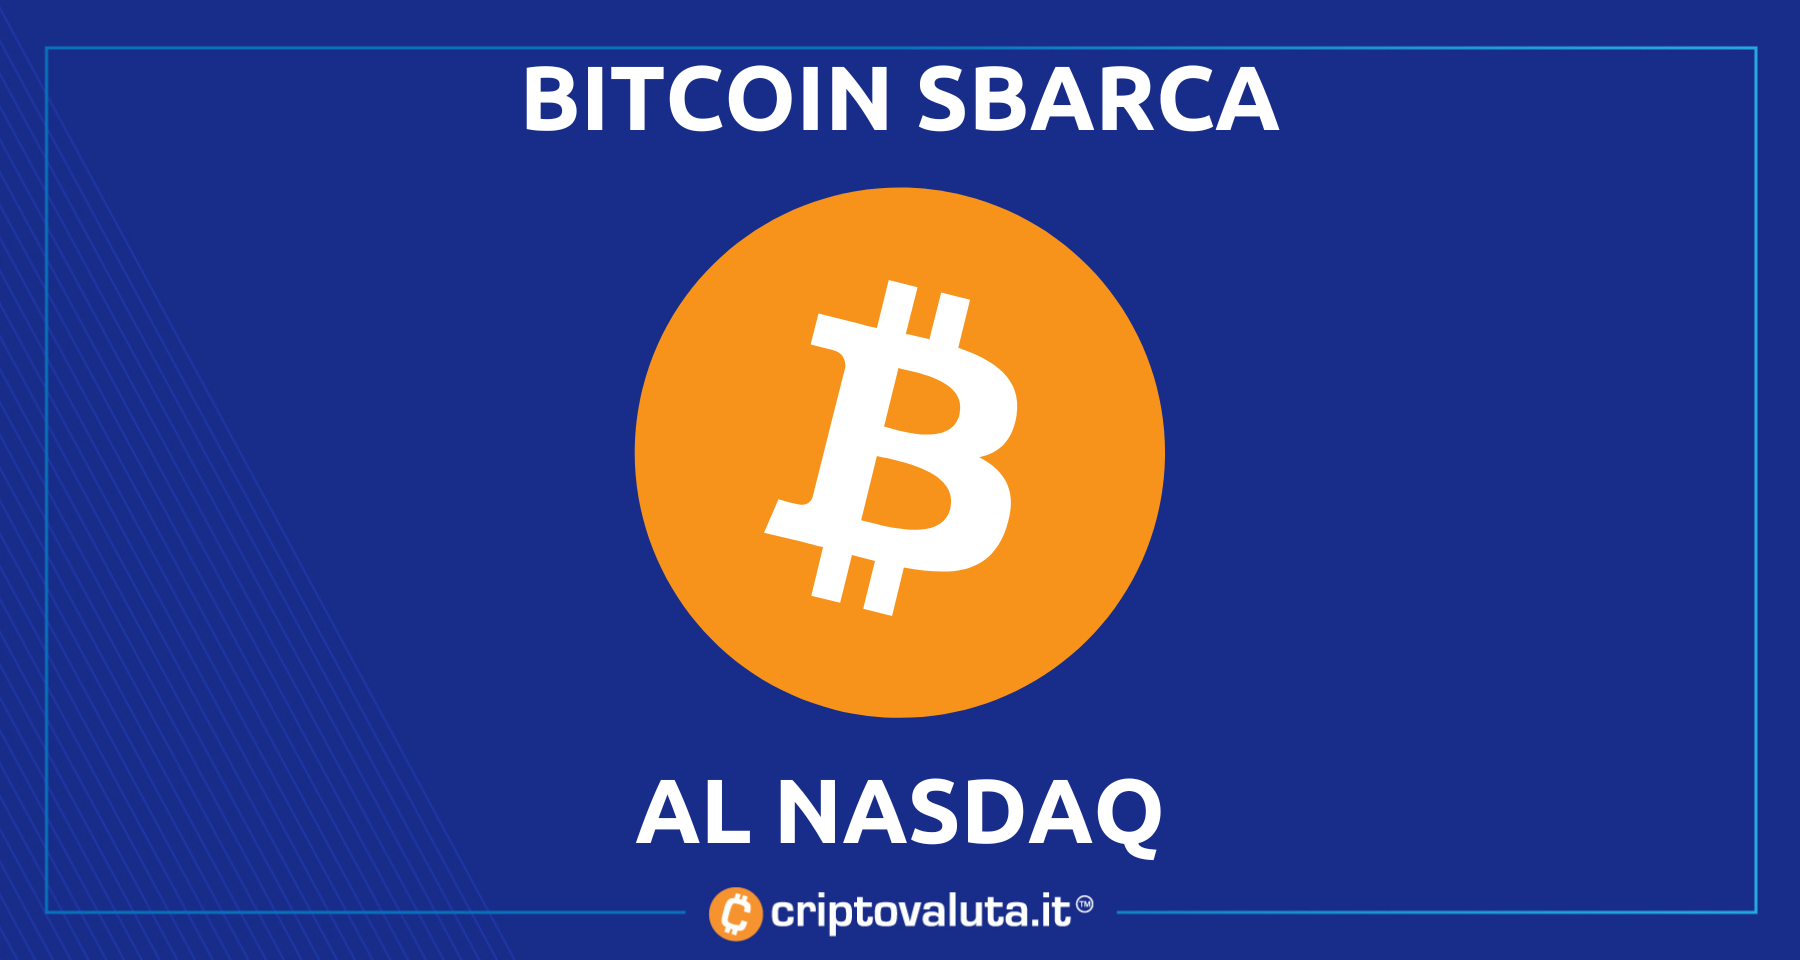 Bitcoin sbarca al NASDAQ con gli ATM | Depot si quota tramite SPAC